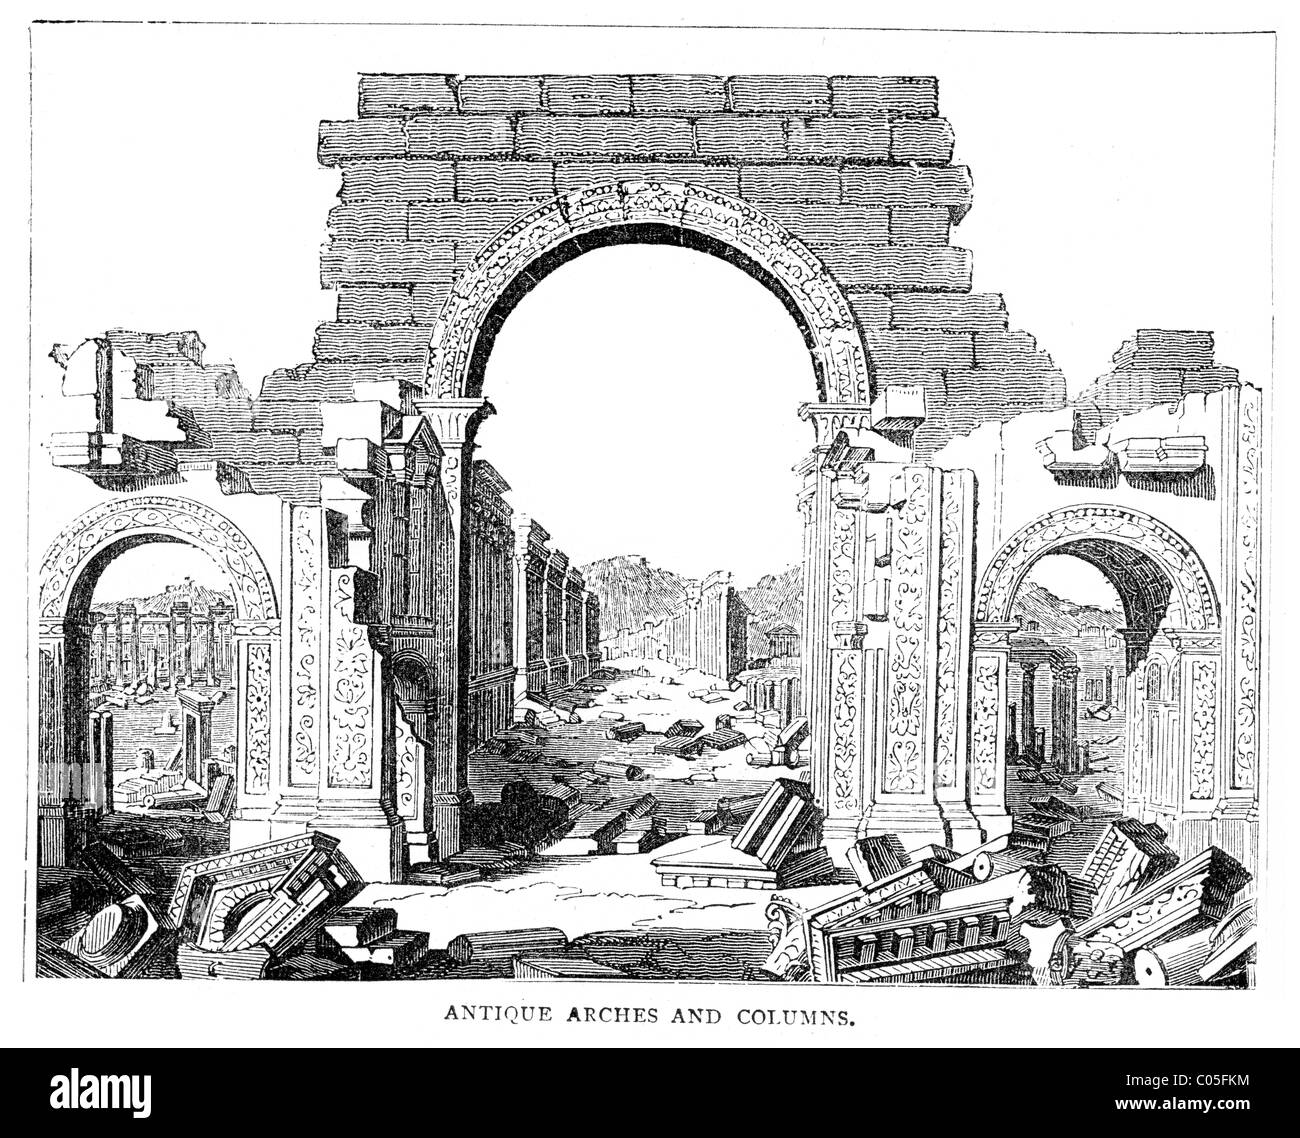 La gravure des ruines anciennes arcades et colonnes Banque D'Images